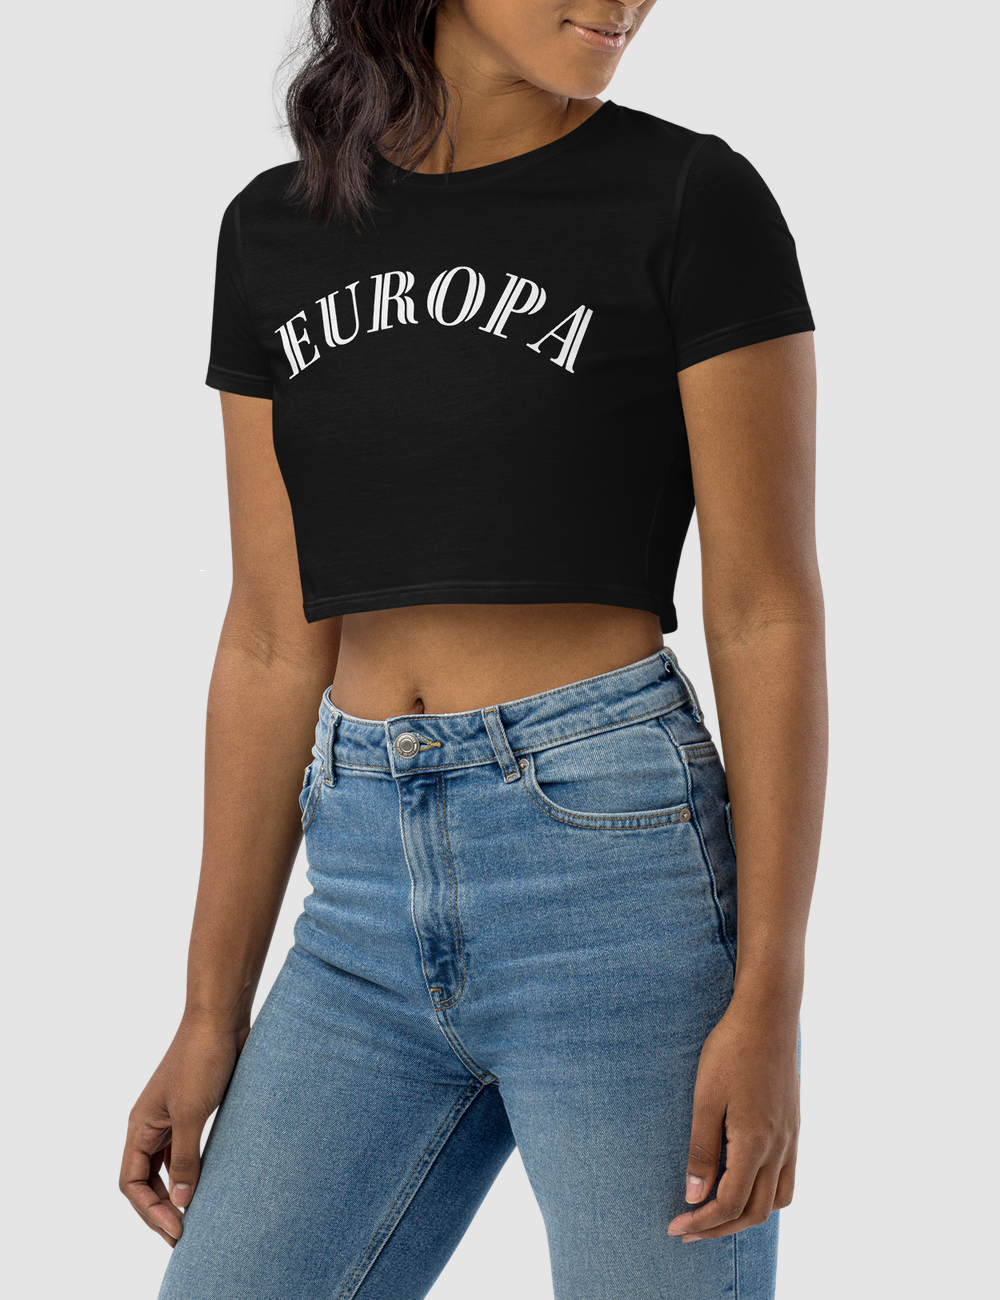 Europa | Women's Crop Top T-Shirt OniTakai